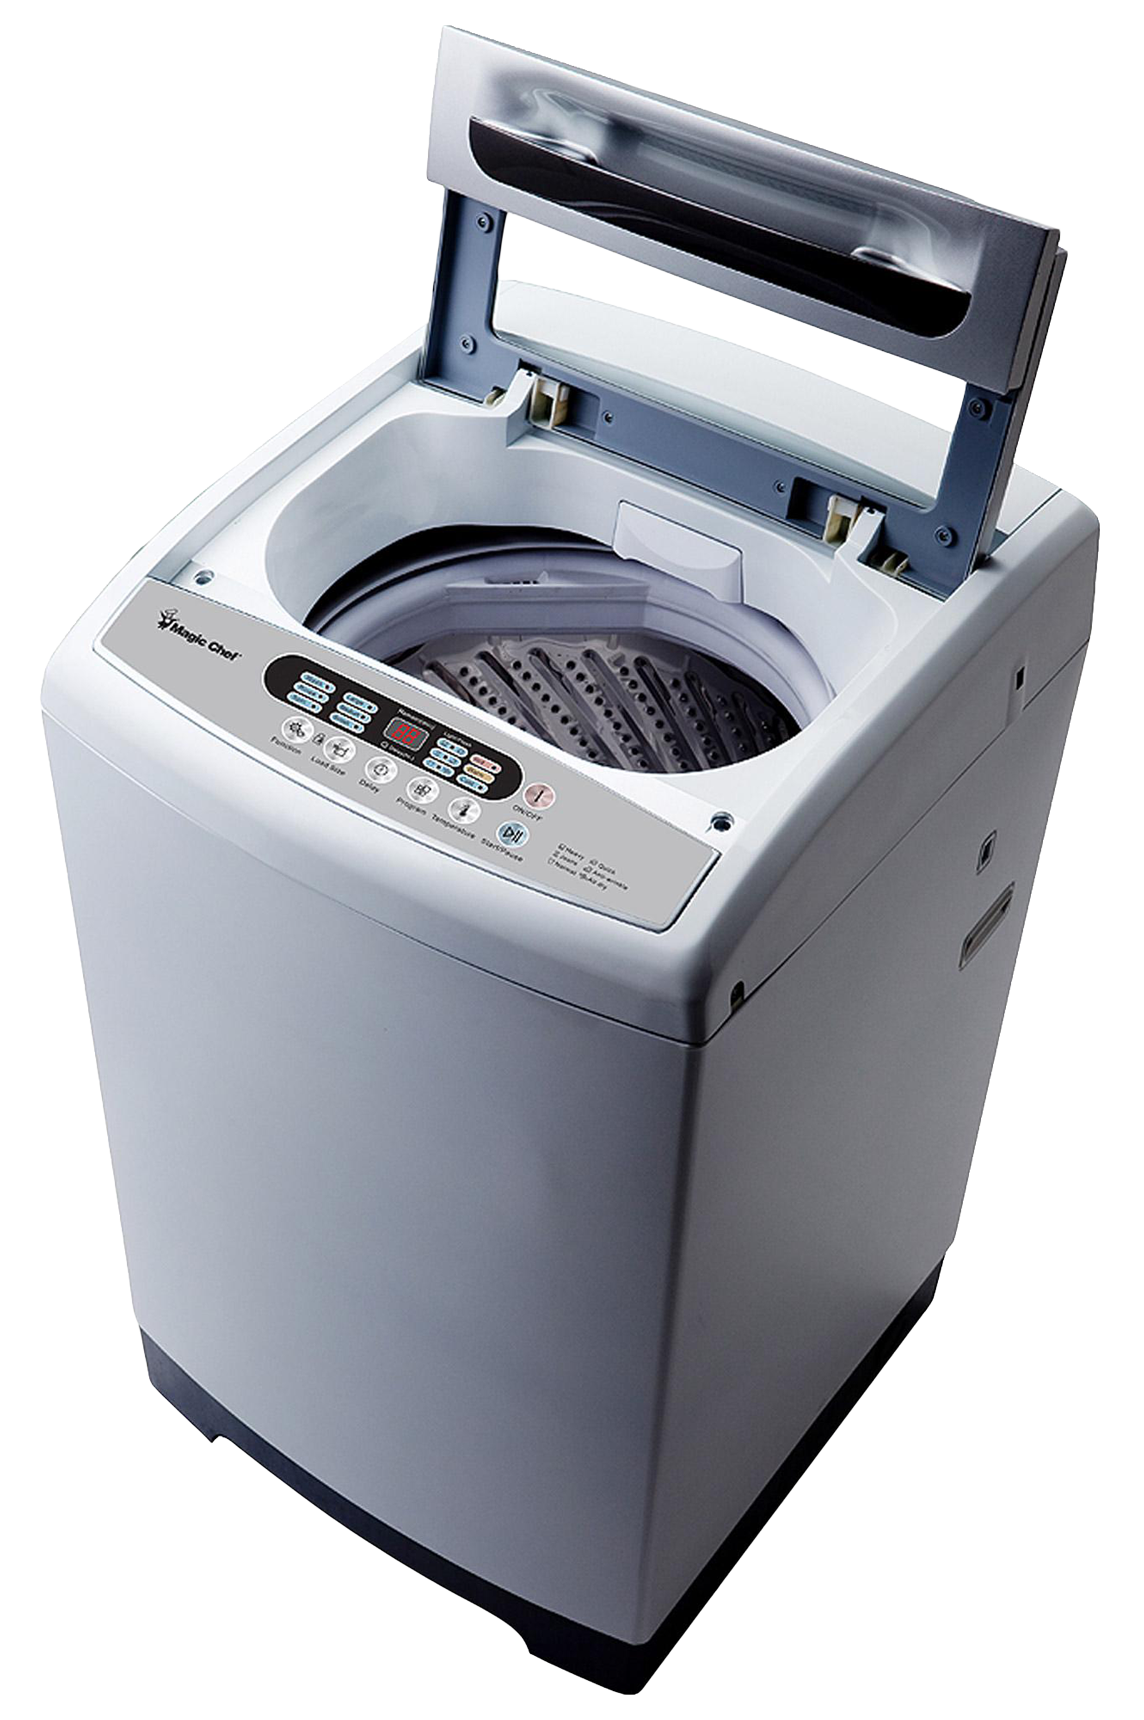 Washing Machine PNG Image